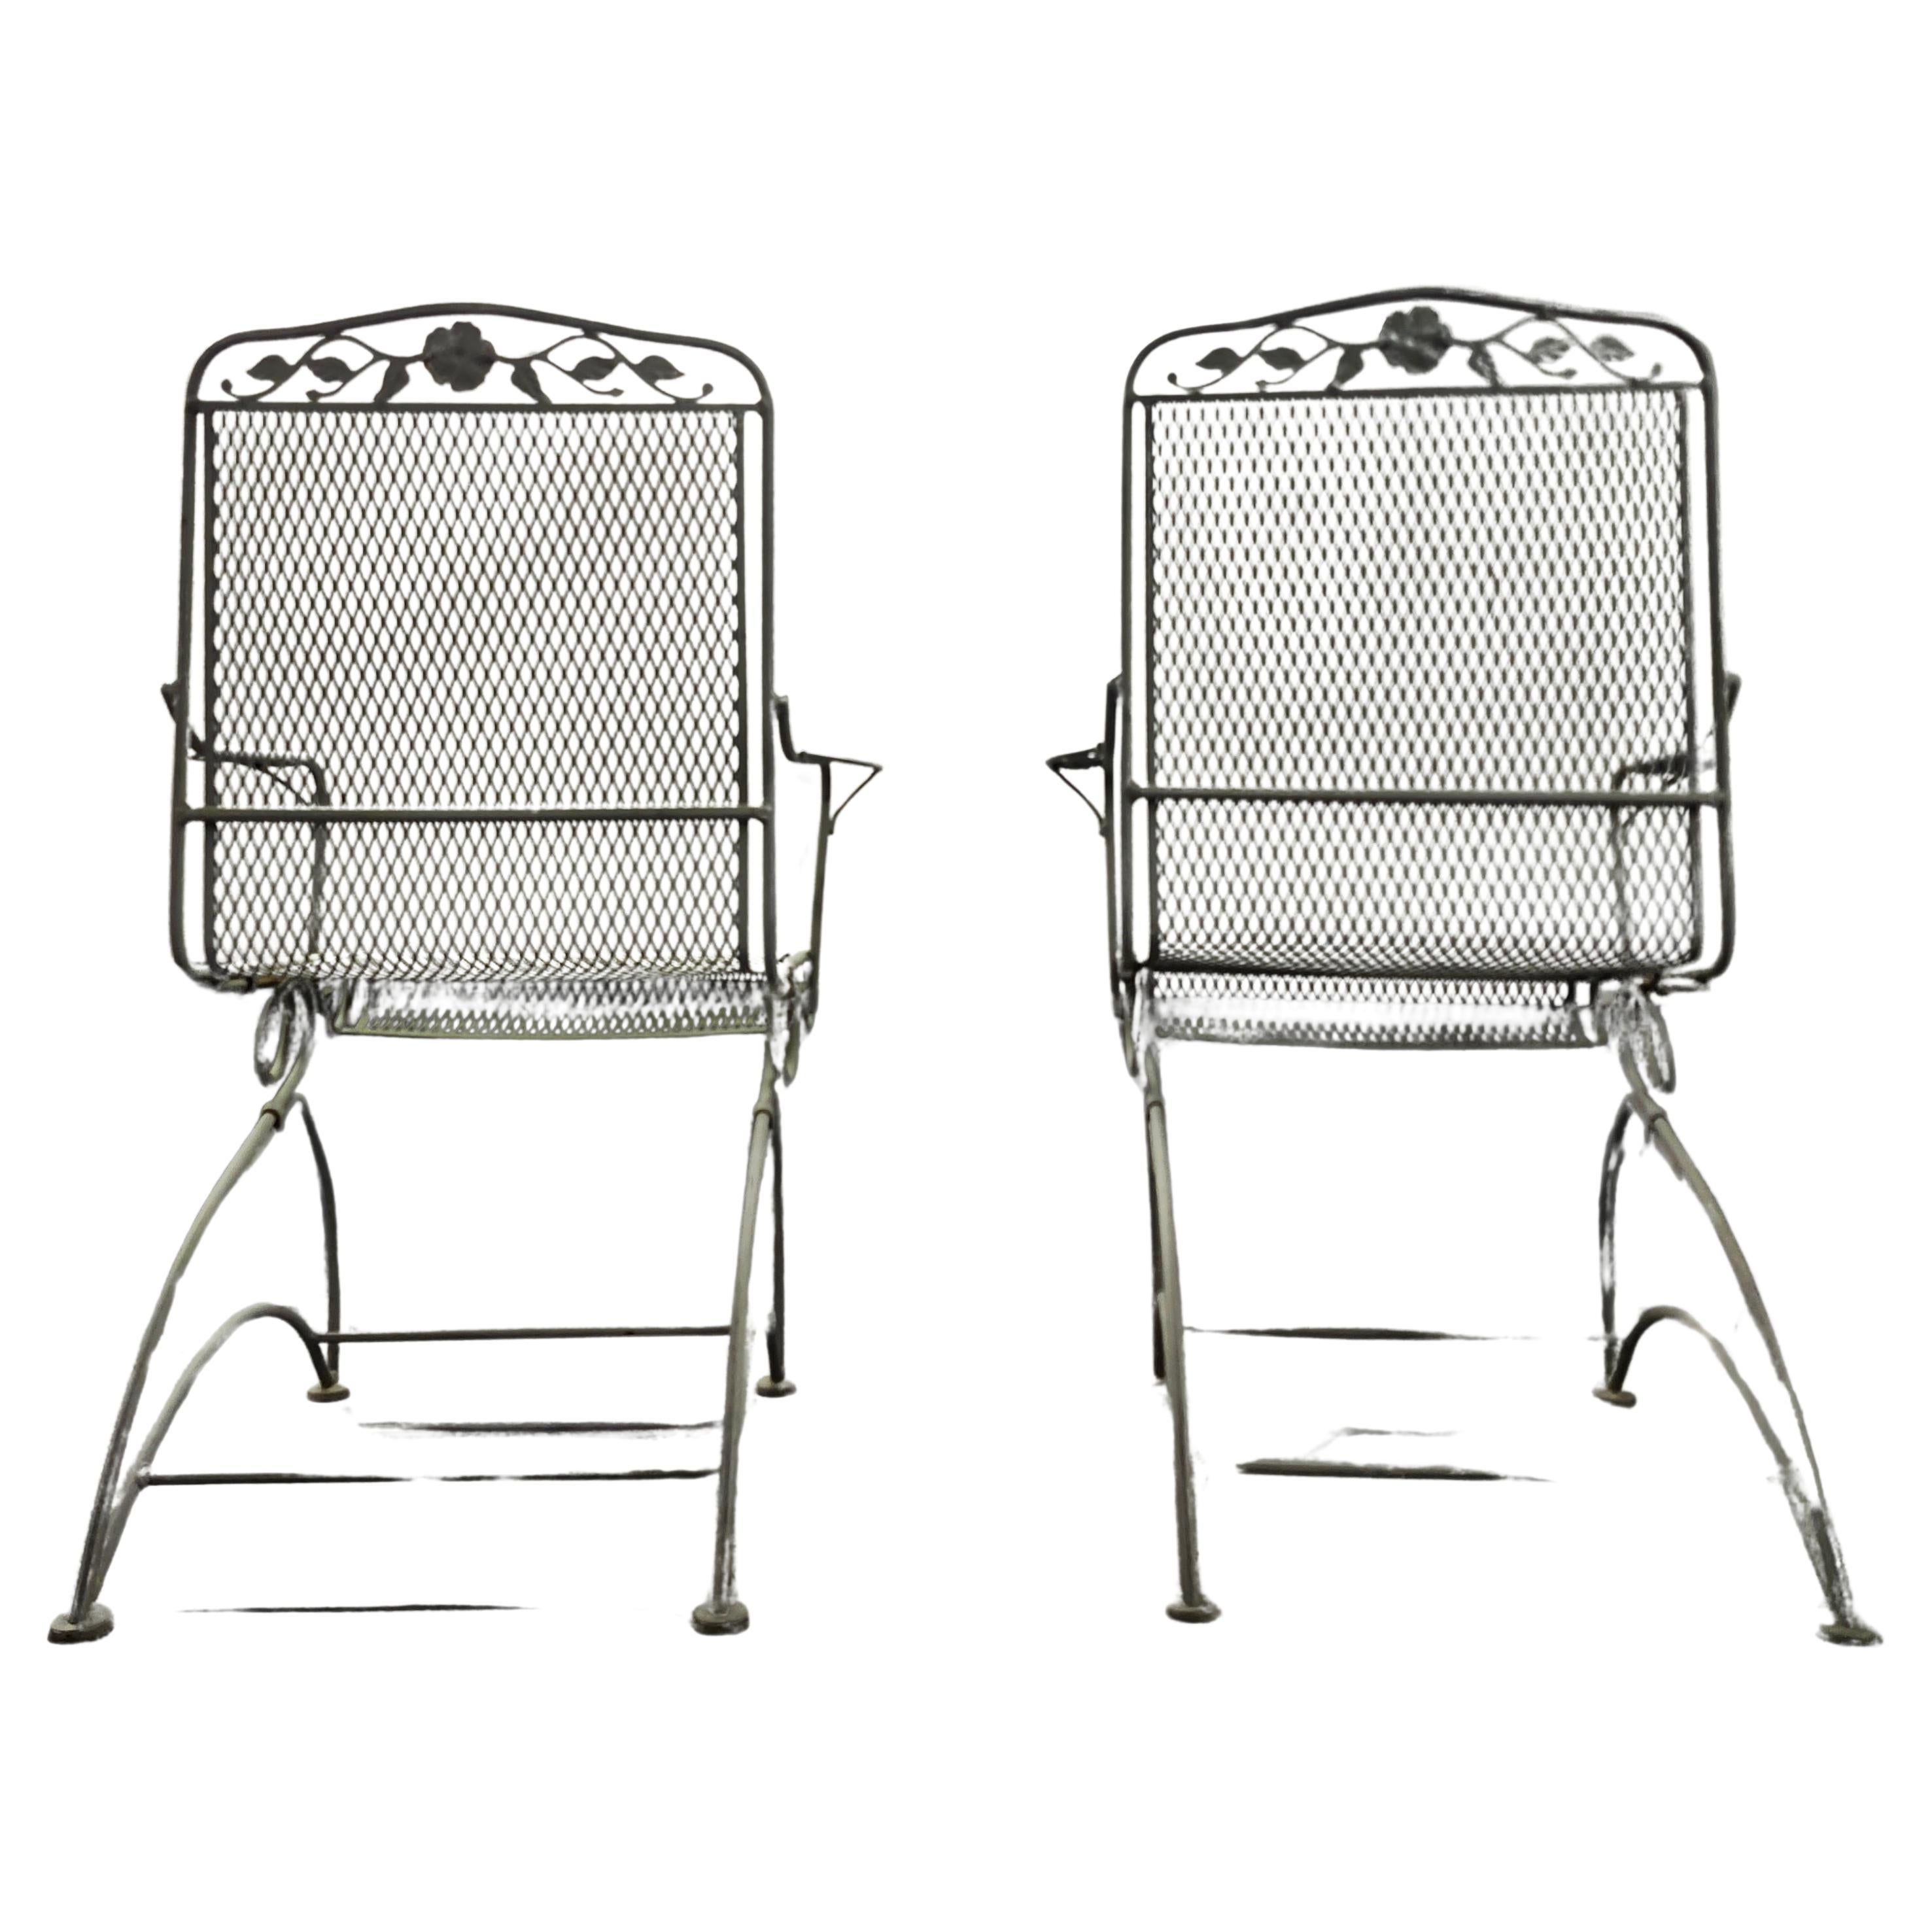 Verfügbar jetzt für Ihr Vergnügen und bereit zu versenden ist ein Paar Vintage Wrought Iron Patio Stühle von Woodard

Dieses schöne schmiedeeiserne Stuhlpaar ist die perfekte Ergänzung für jeden Garten, jede Terrasse oder Veranda. Genießen Sie ein